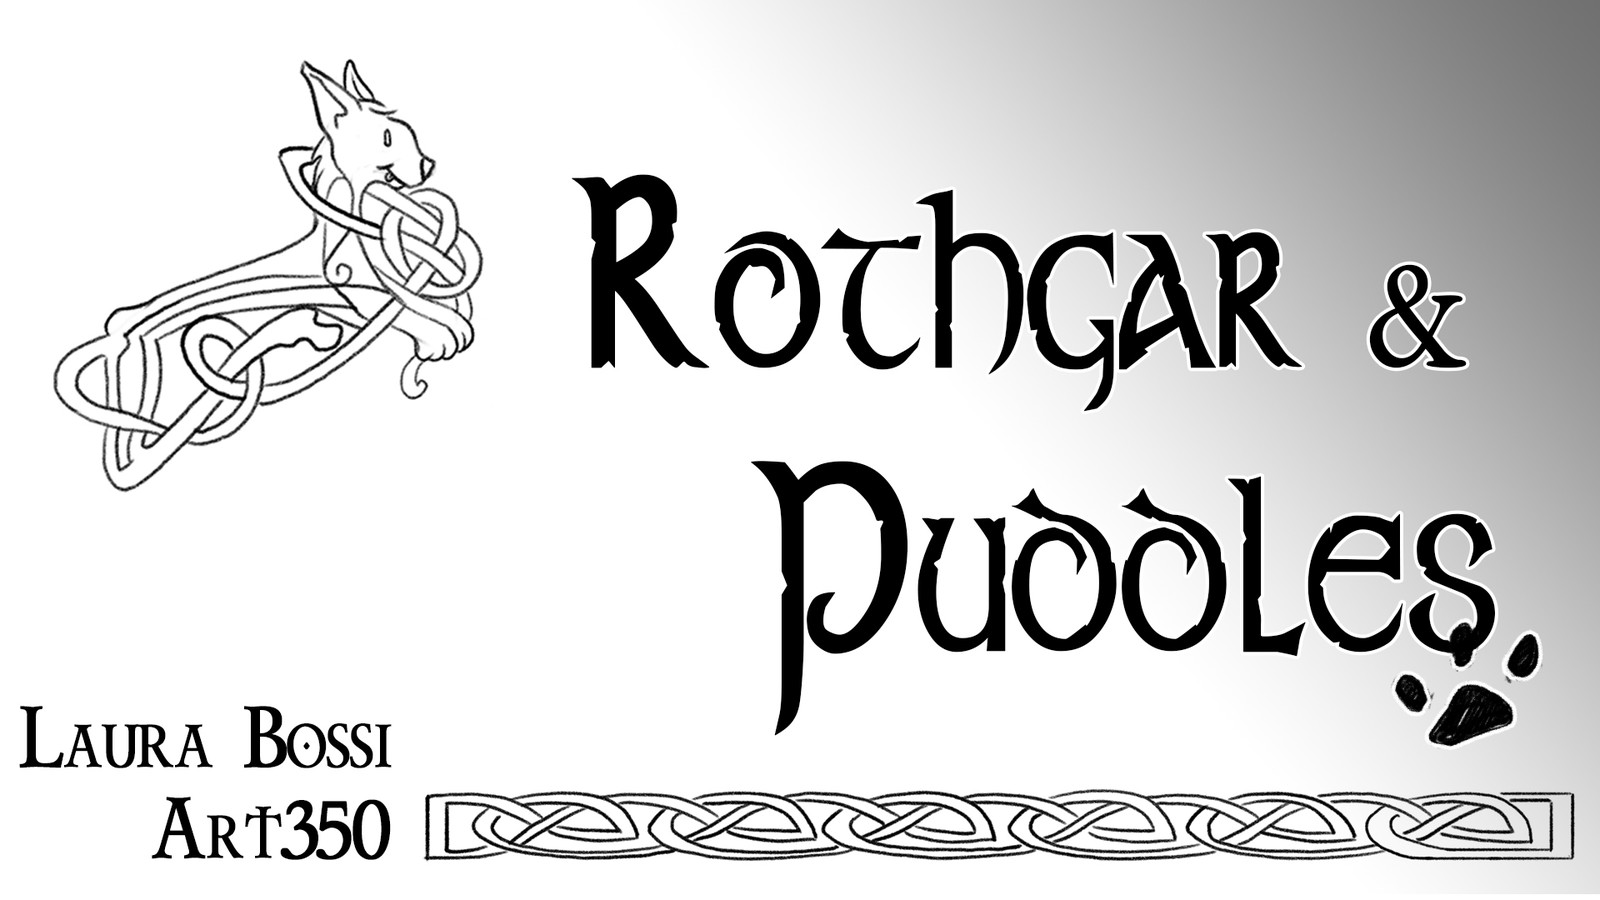 STORYBOARD ANIMATIC: Rothgar & Puddles